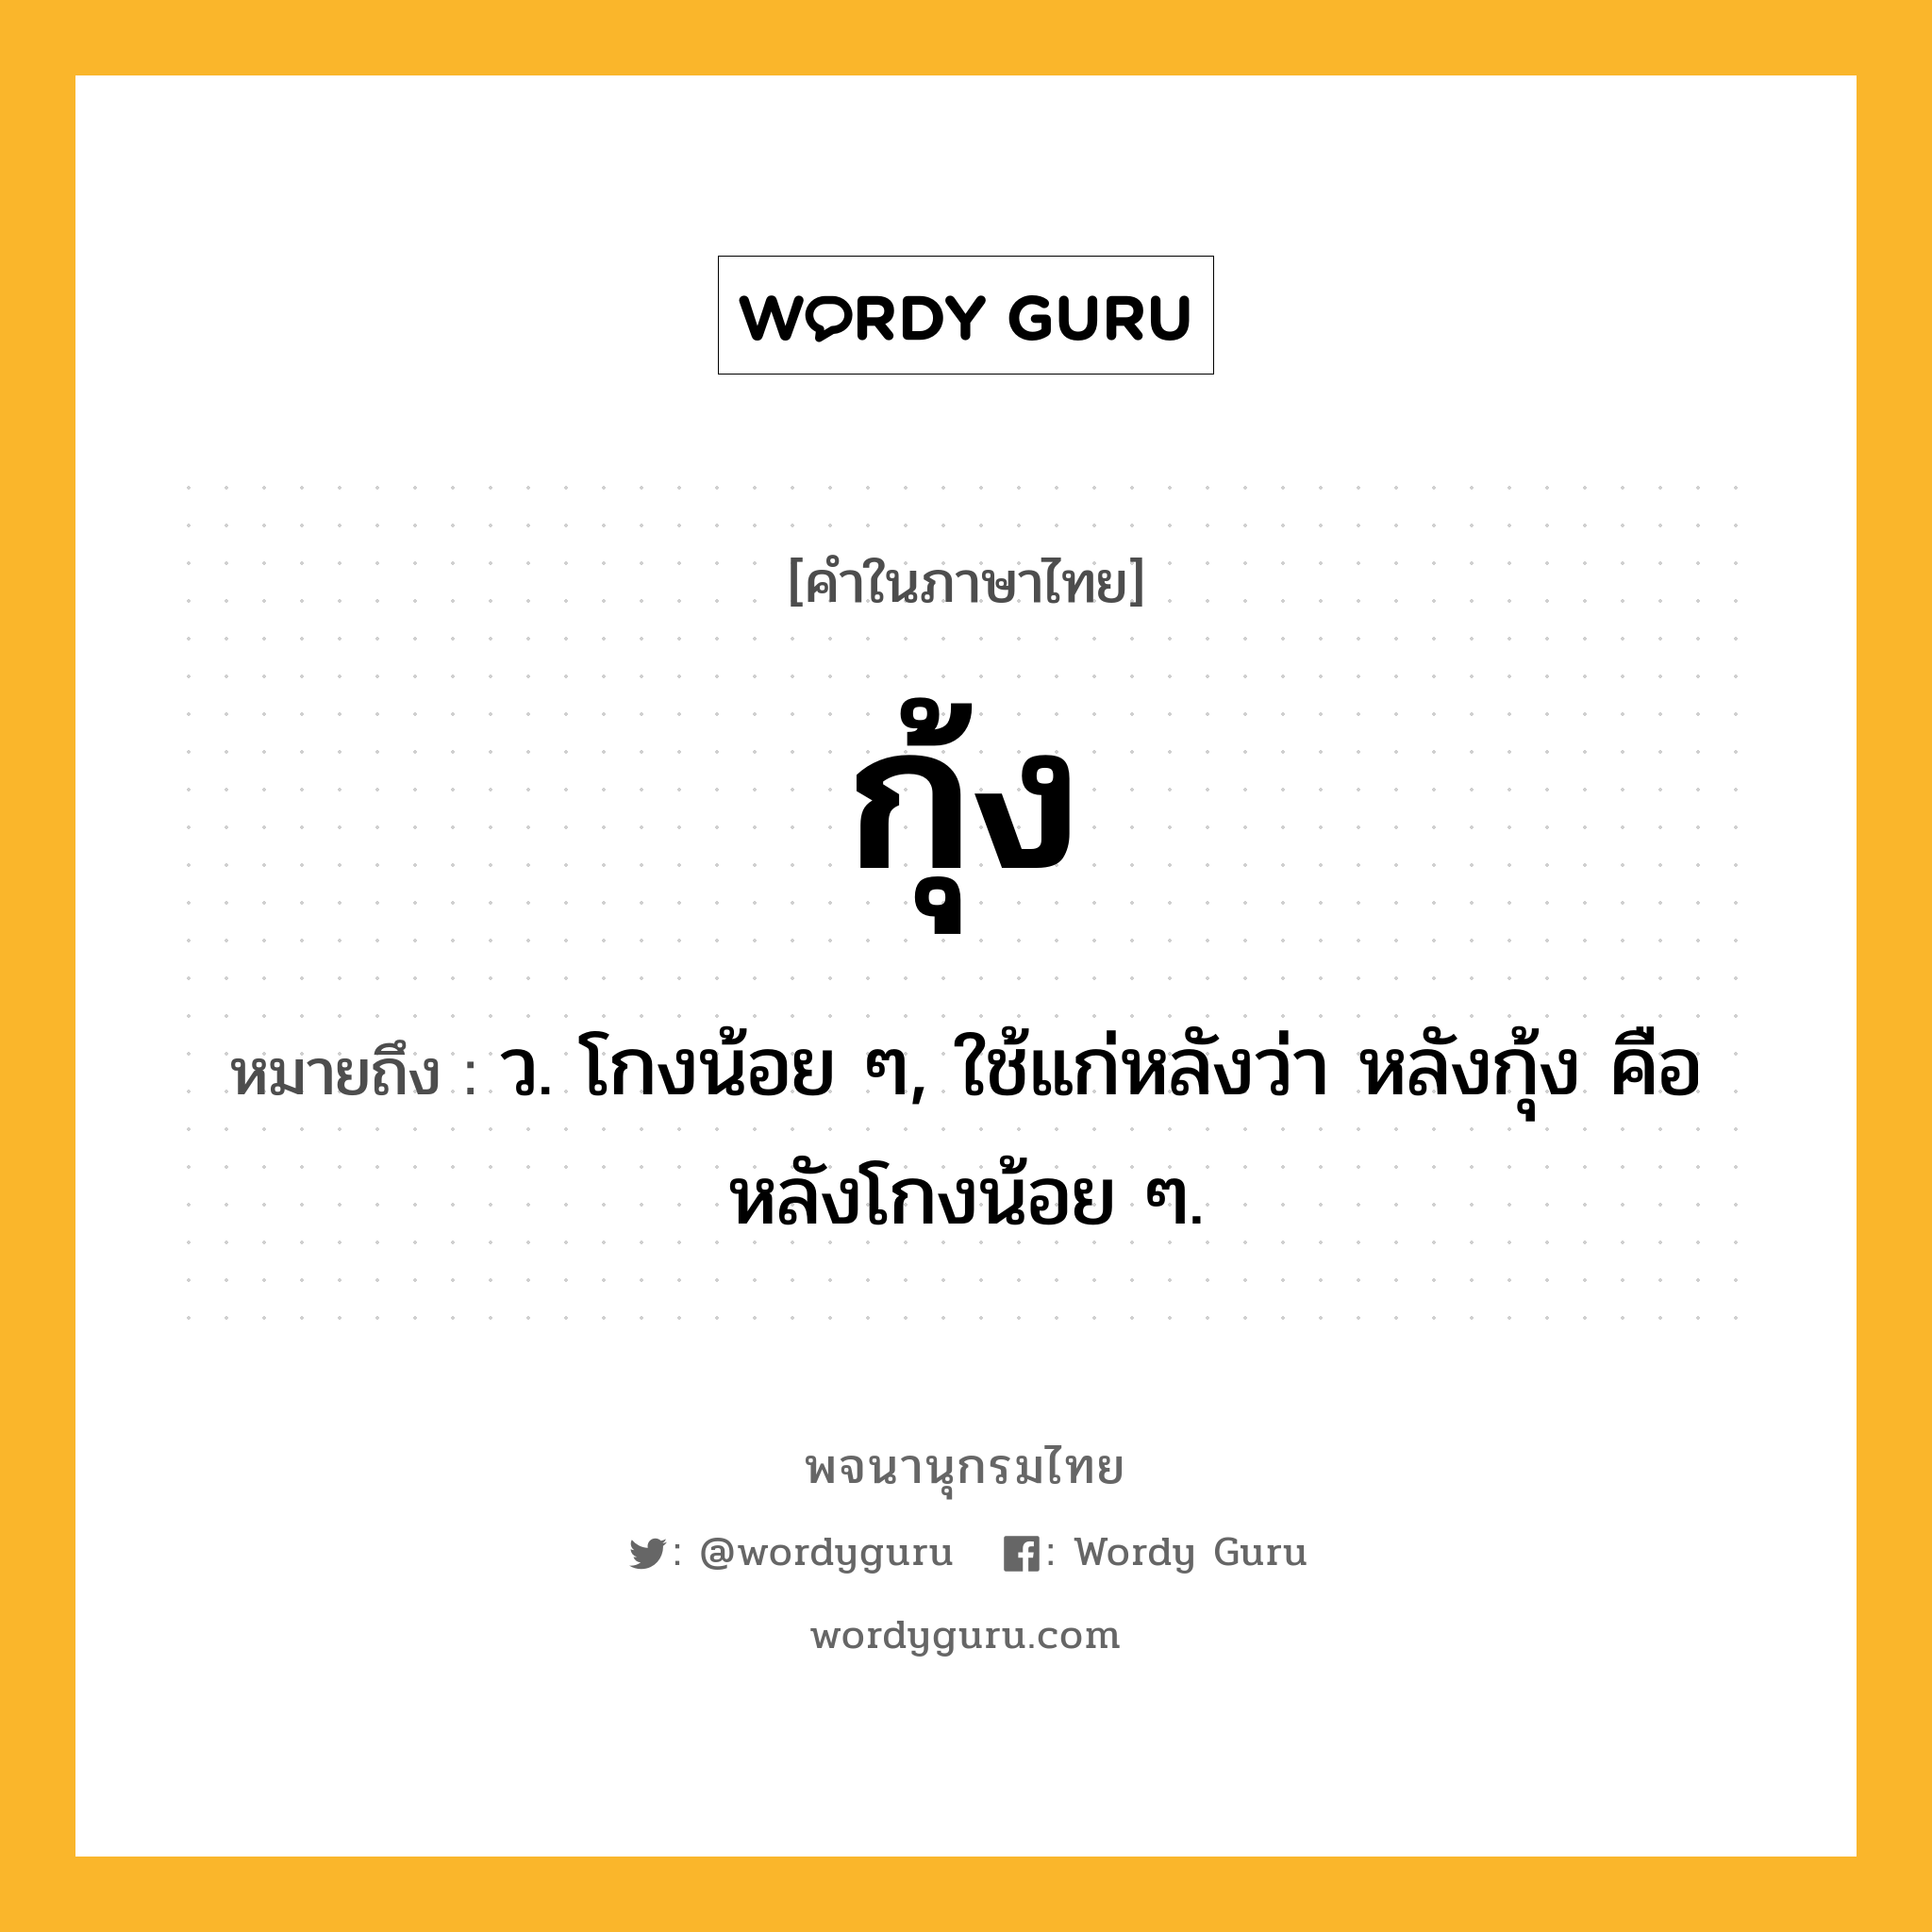 กุ้ง หมายถึงอะไร?, คำในภาษาไทย กุ้ง หมายถึง ว. โกงน้อย ๆ, ใช้แก่หลังว่า หลังกุ้ง คือ หลังโกงน้อย ๆ.